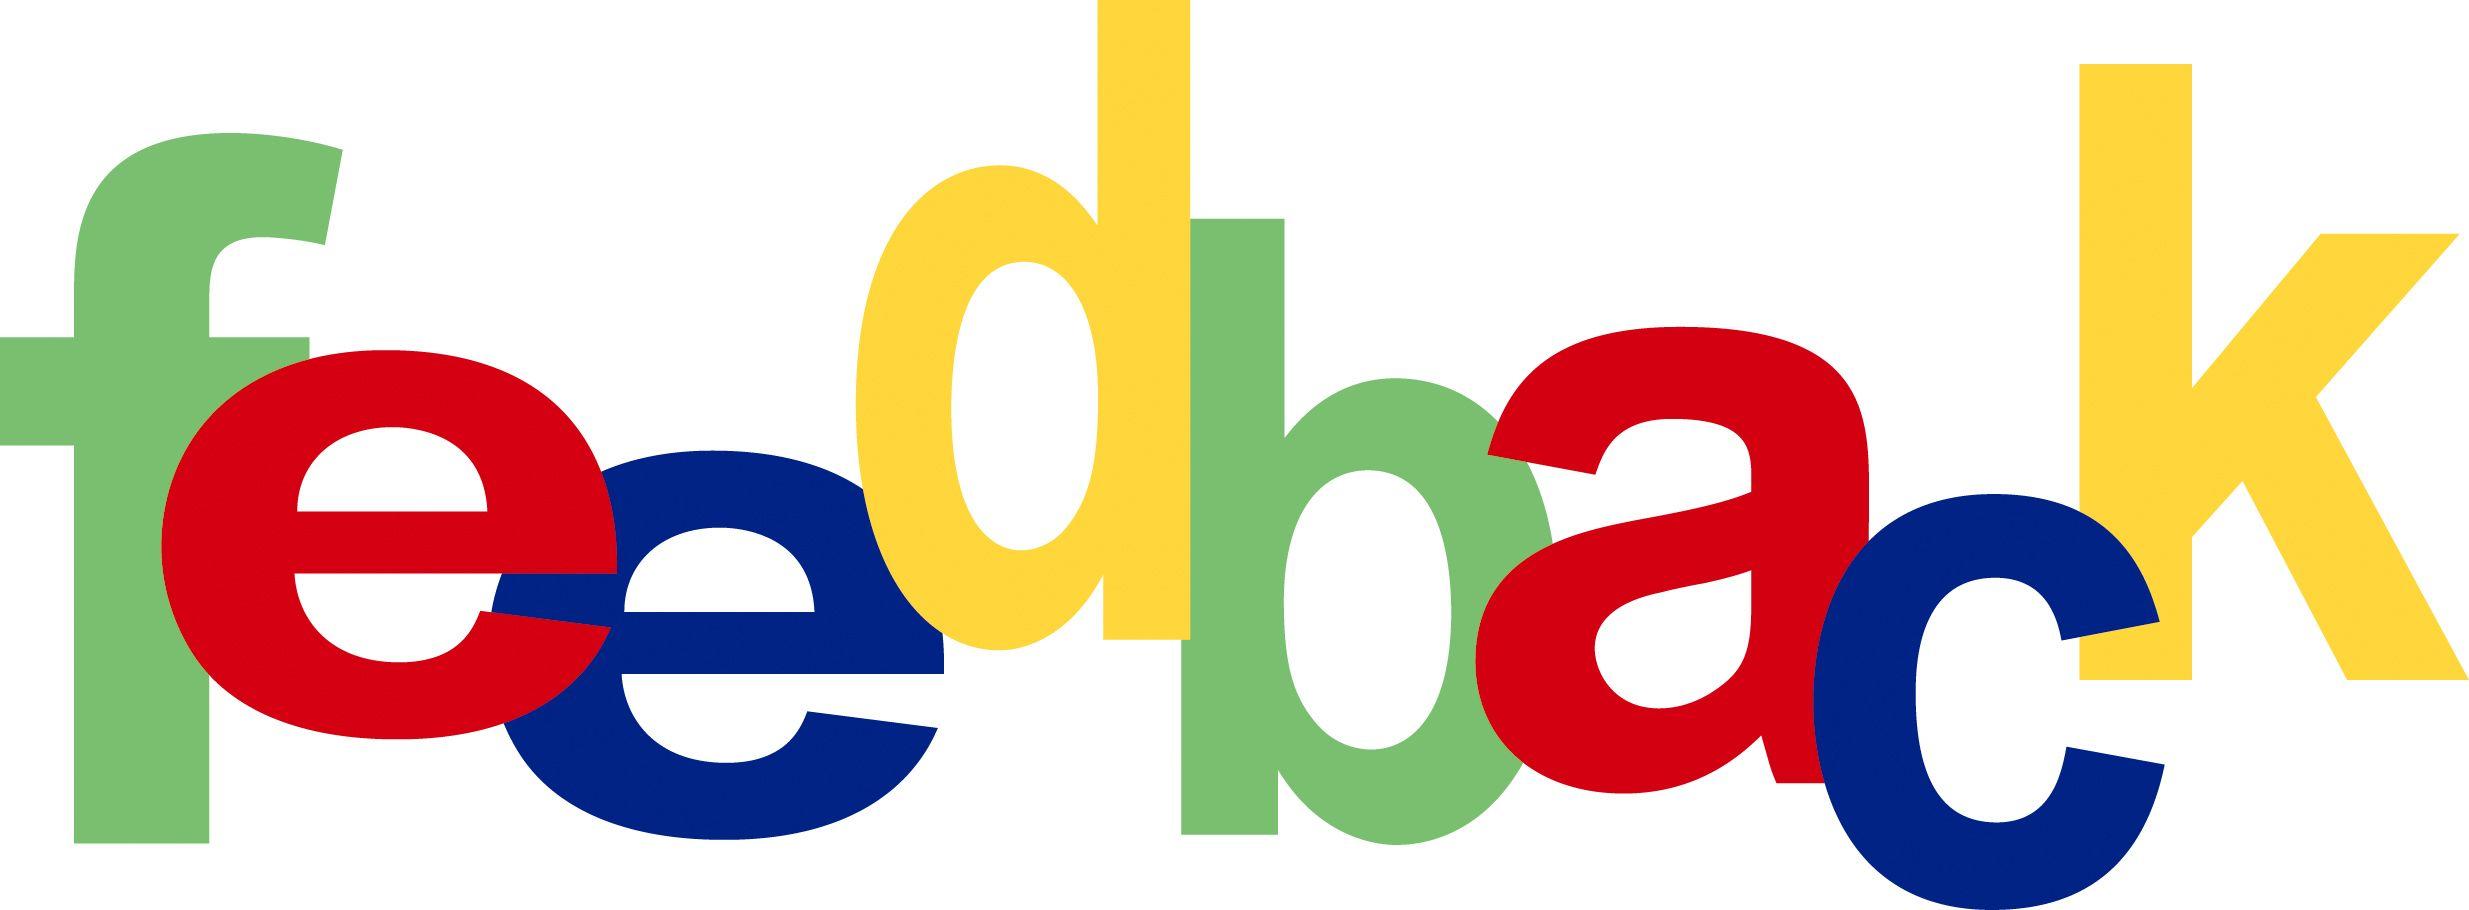 eBay Feedback Logo - eBay's worthless feedback system